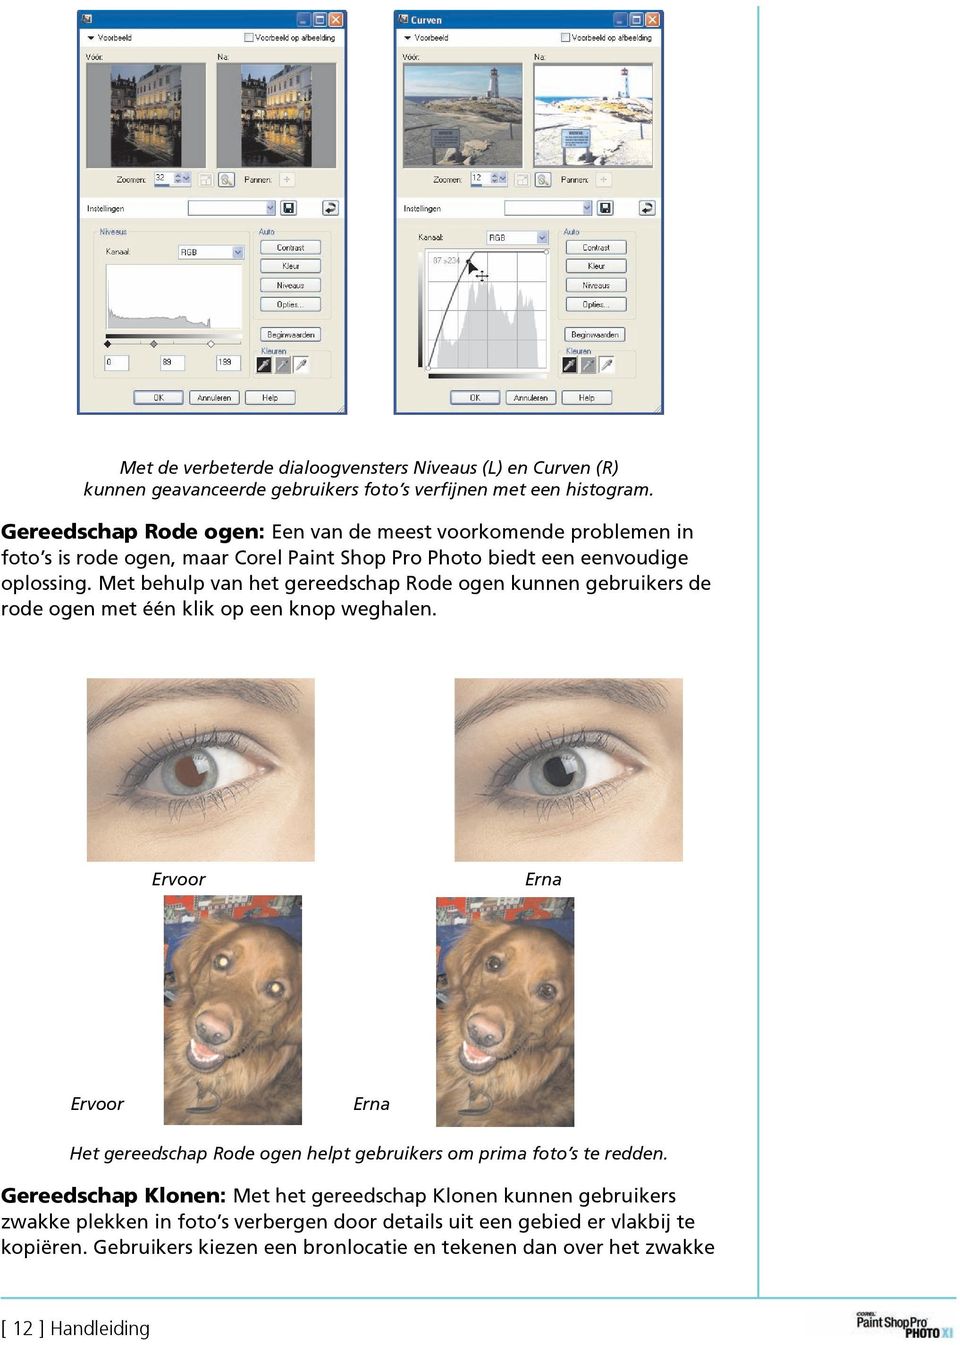 Met behulp van het gereedschap Rode ogen kunnen gebruikers de rode ogen met één klik op een knop weghalen.